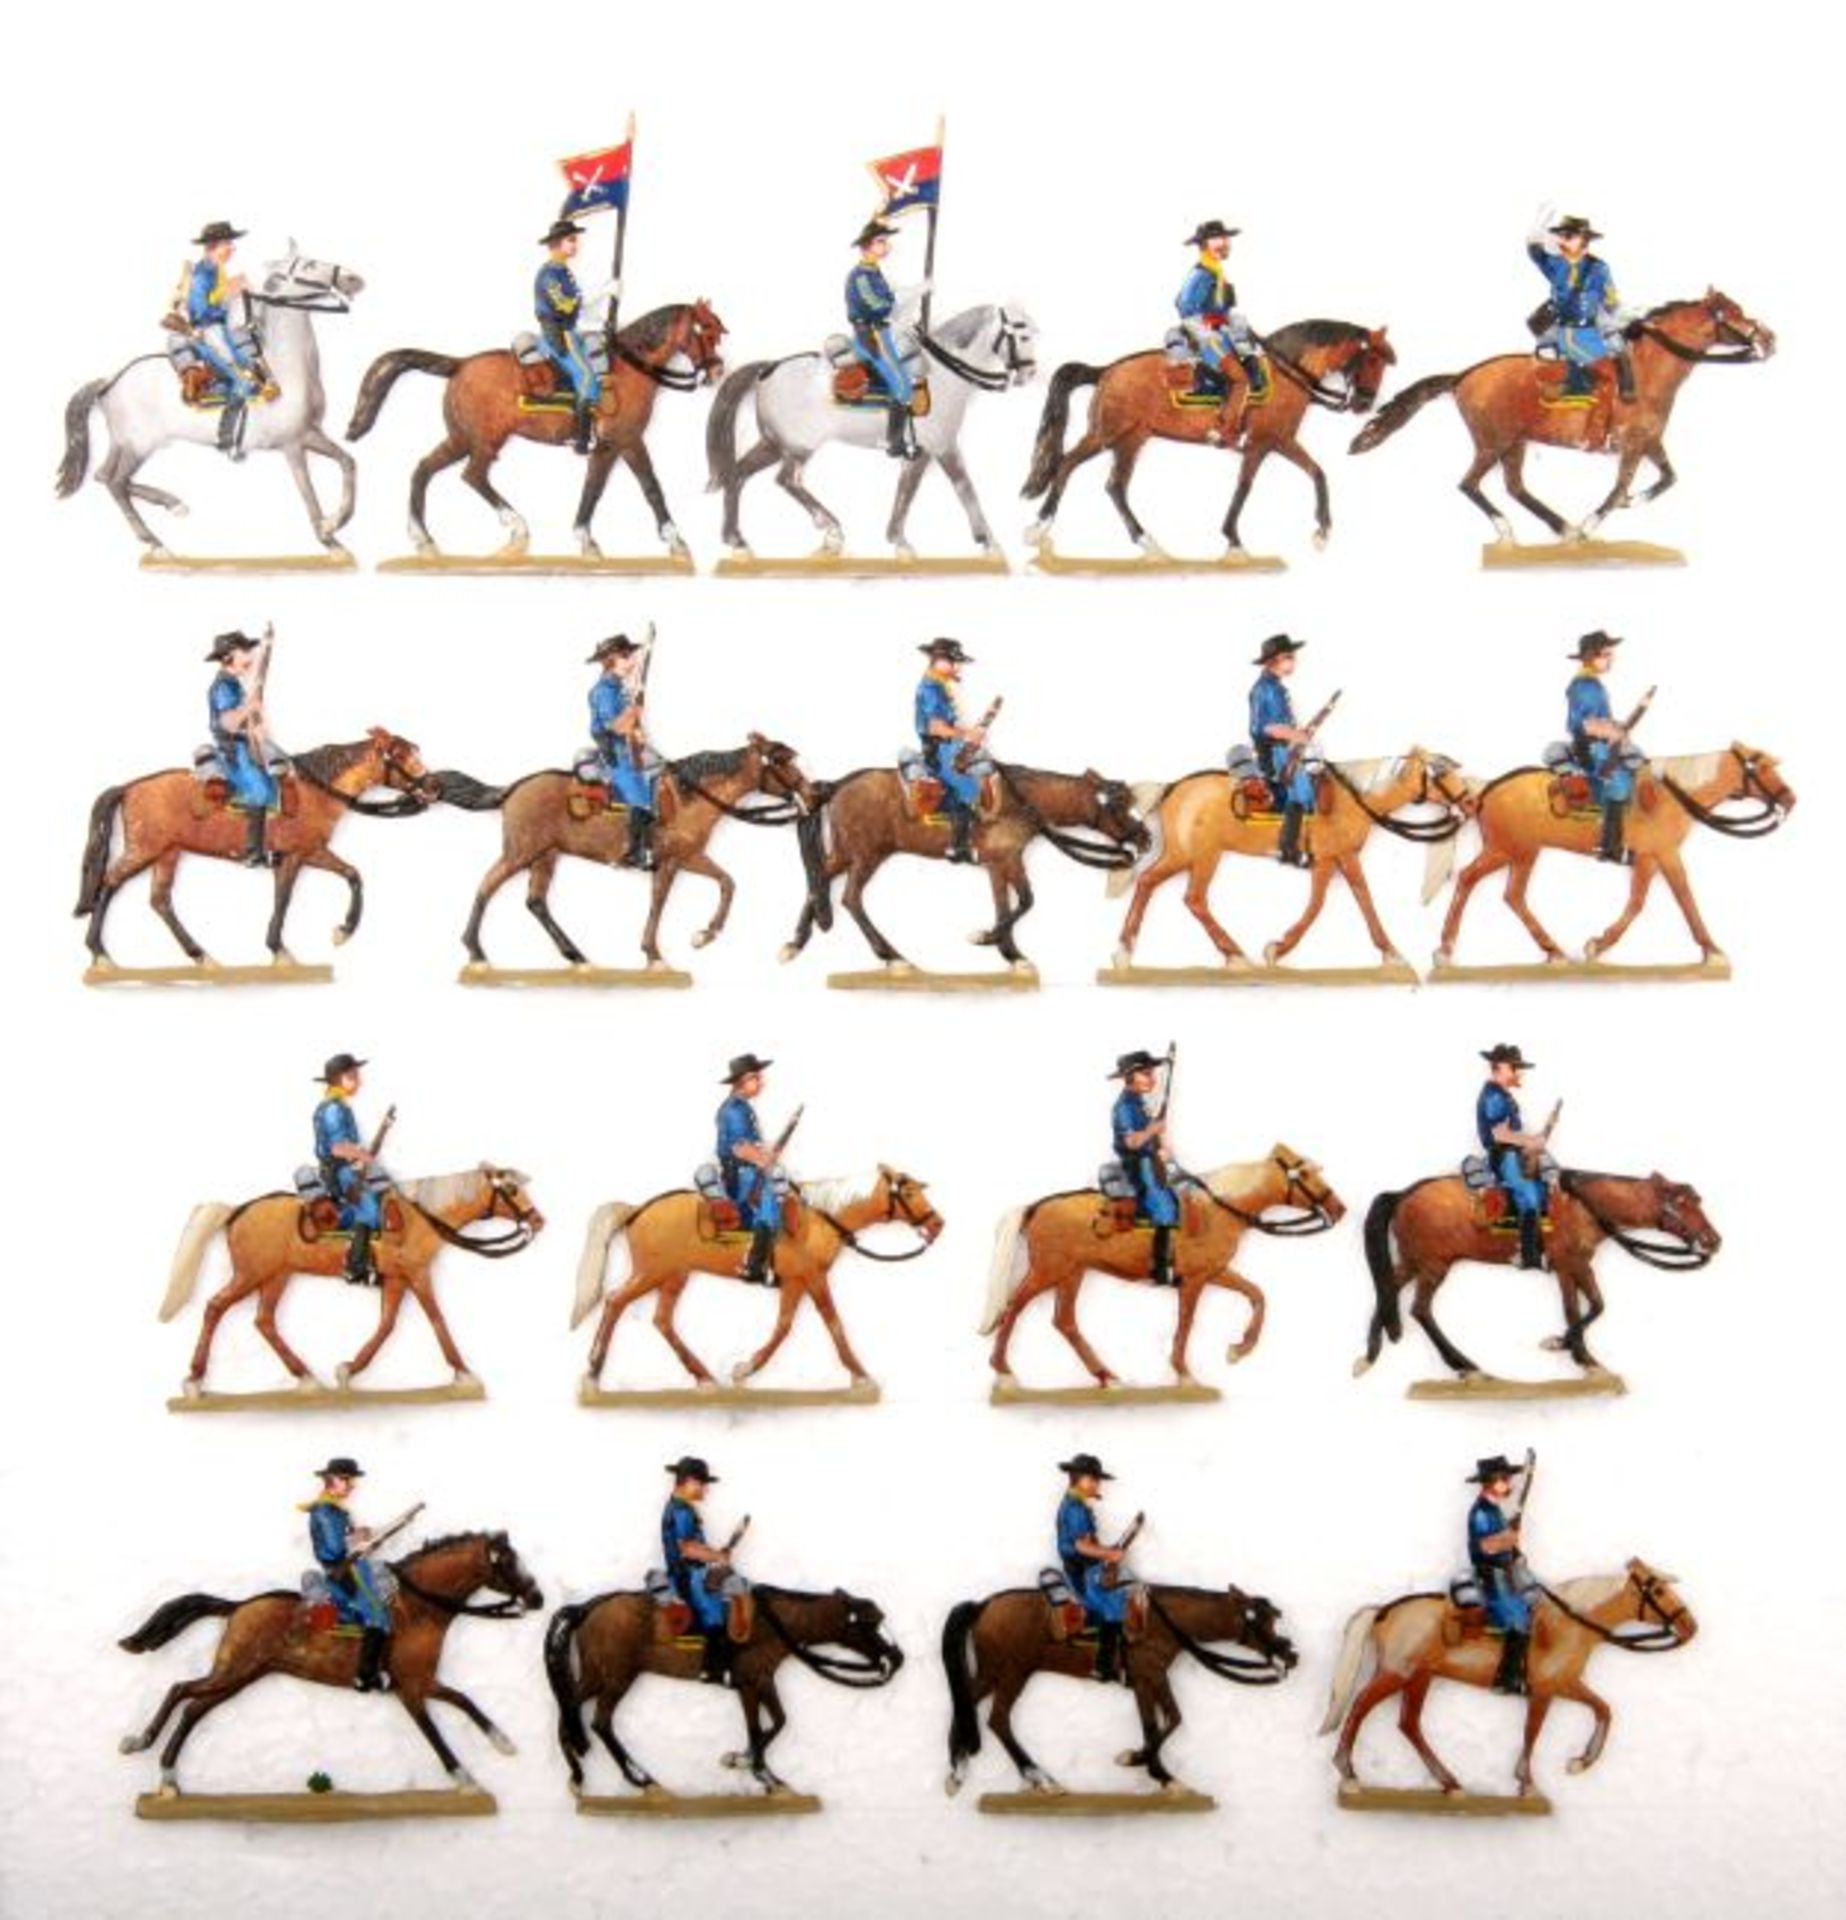 USA um 1876, Schlacht am Little Bighorn, 7. Kavallerie-Regiment unter General Custer, Romund,